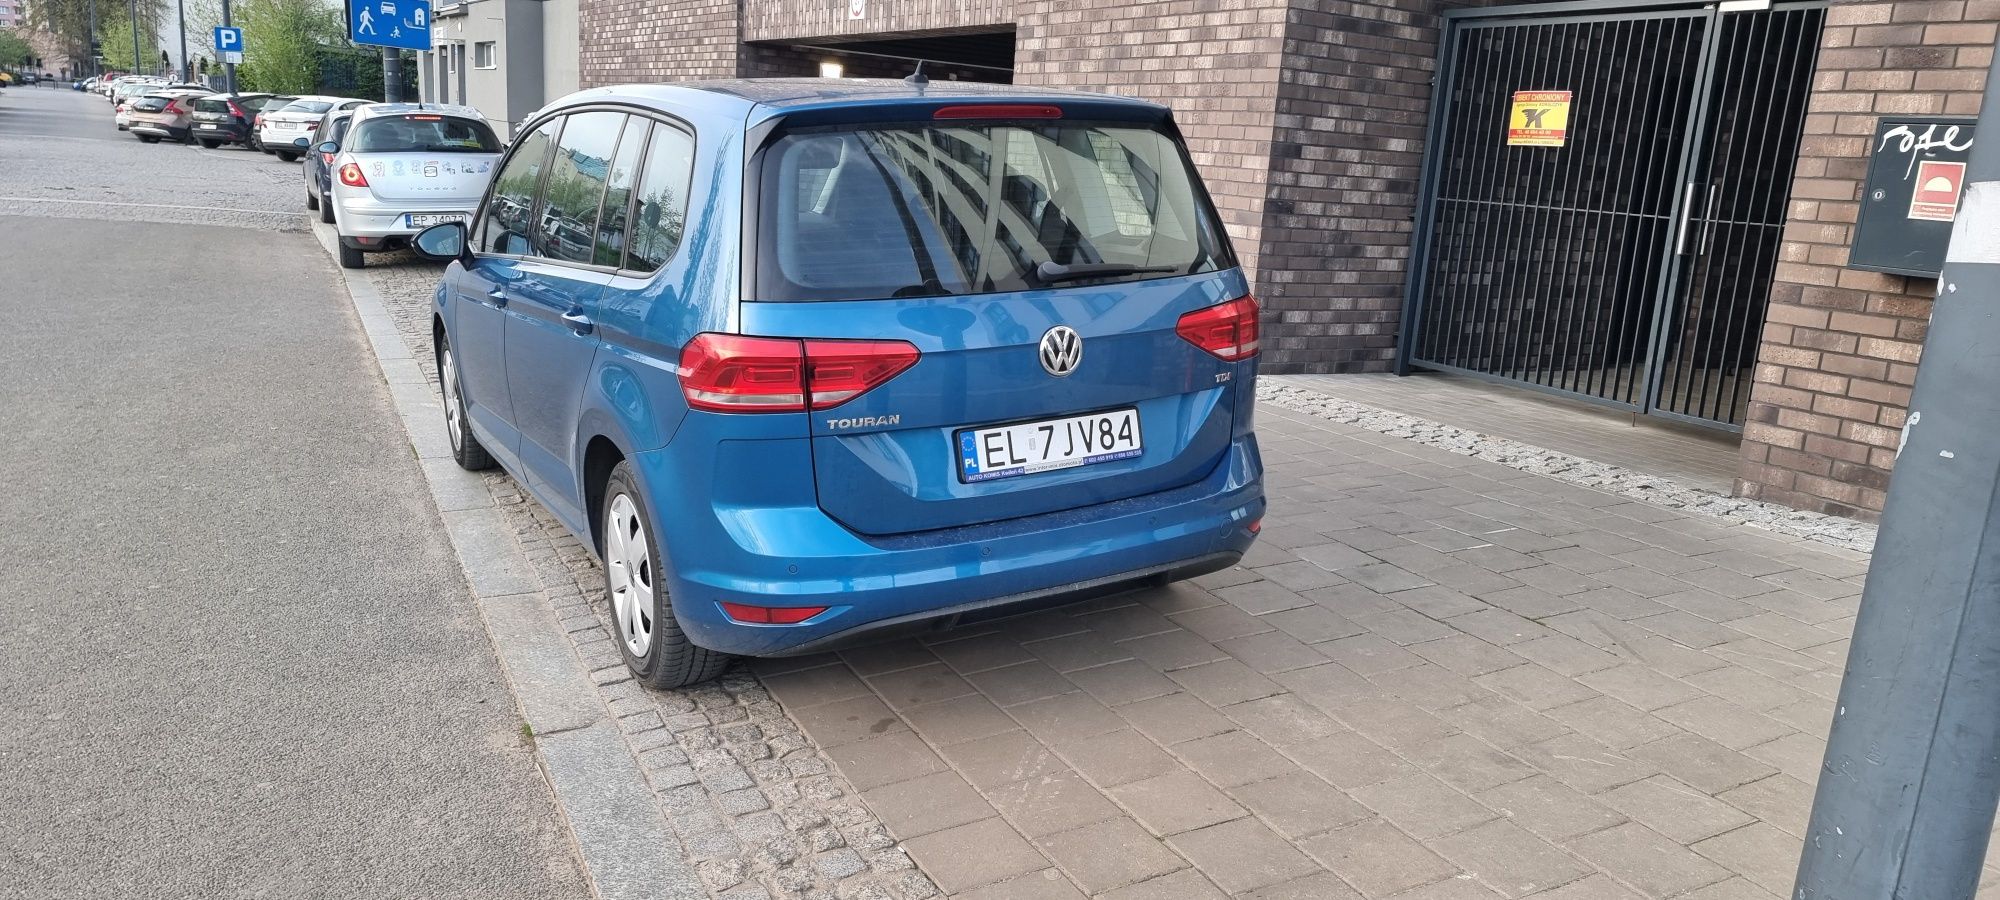 VW turan 1.6 Tdi